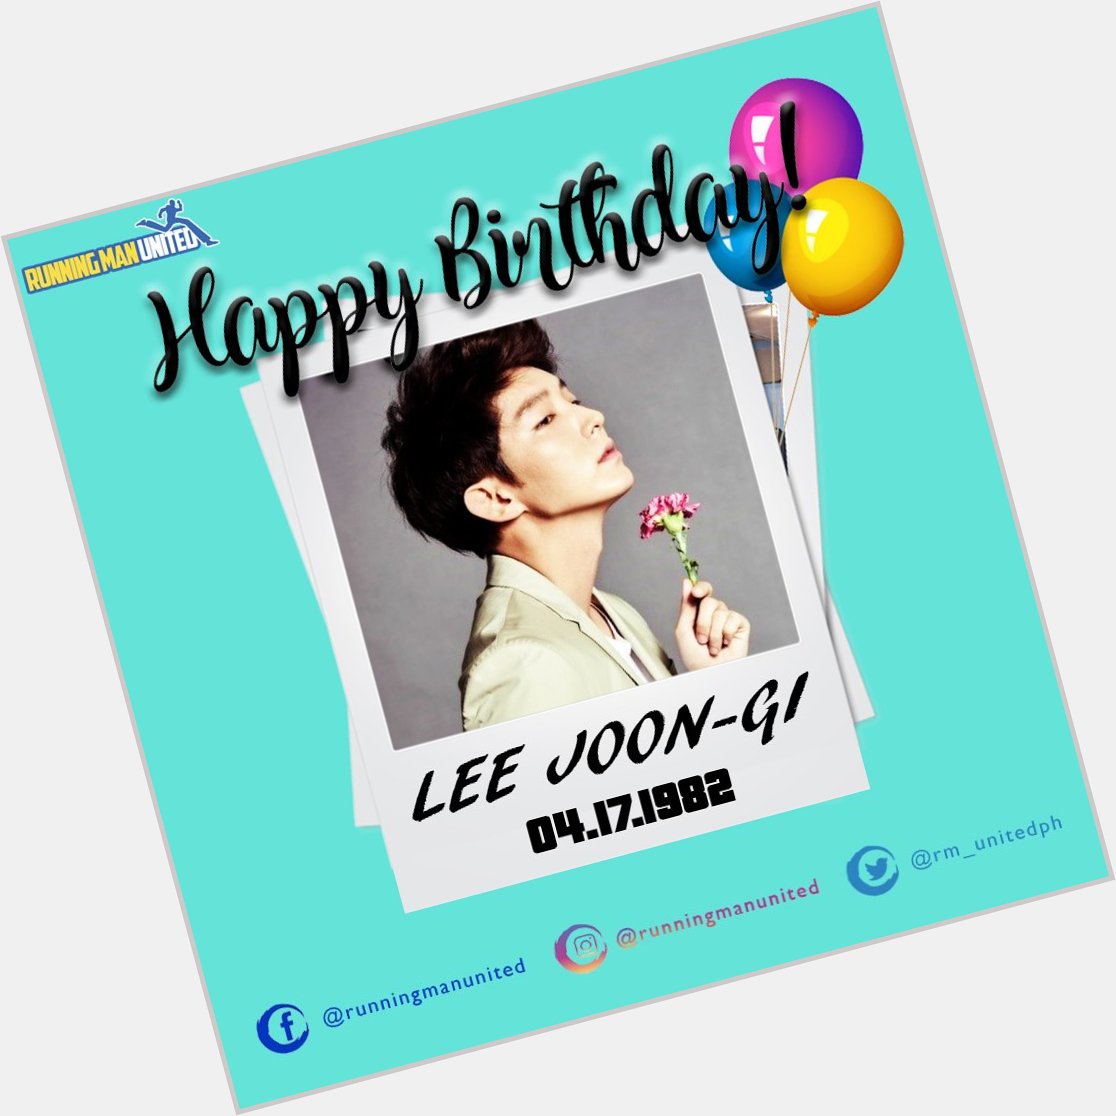 Happy Birthday Lee Joon-gi! 